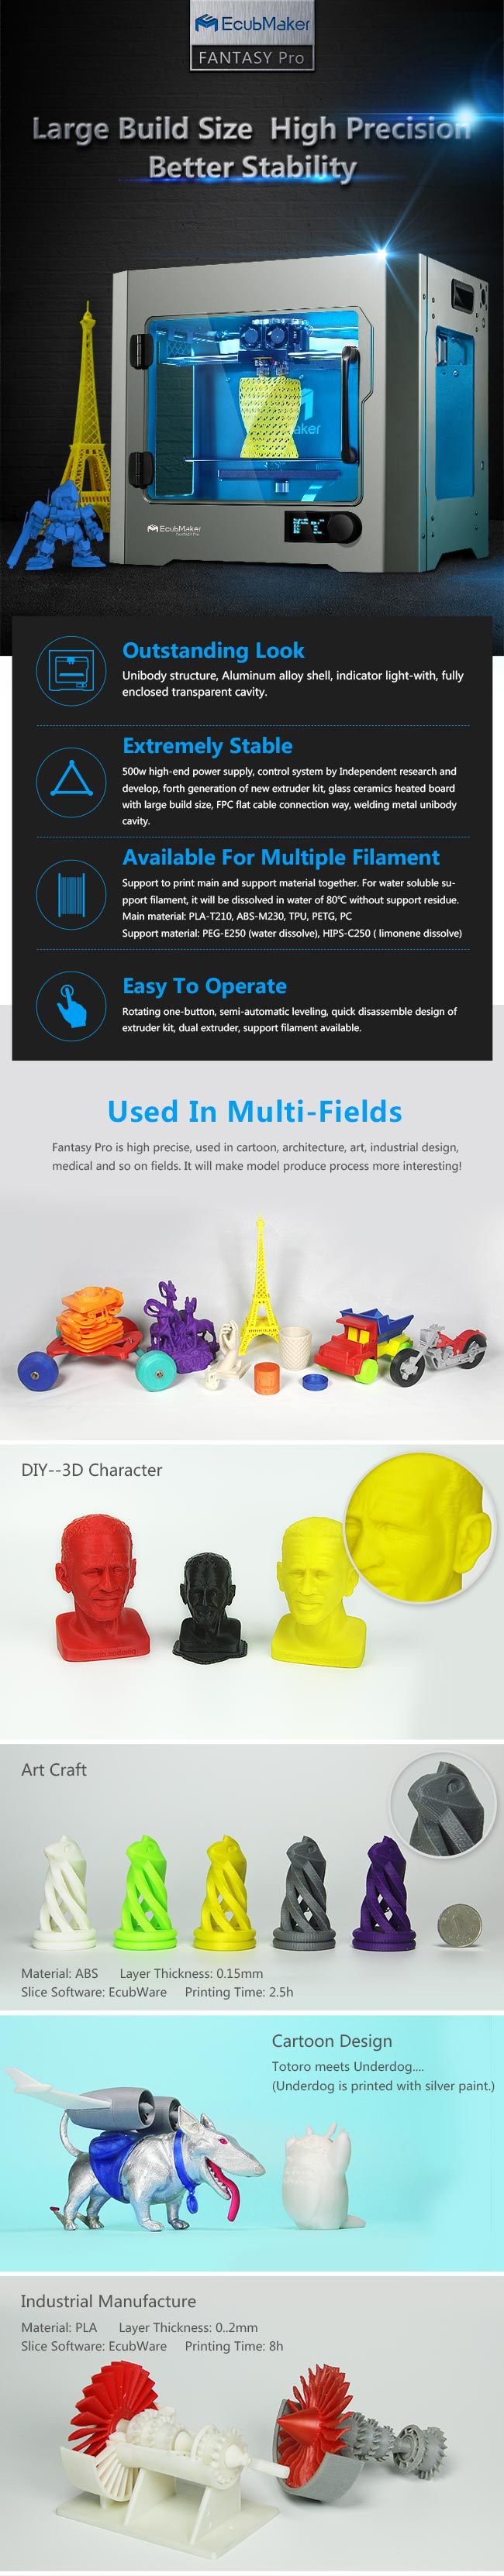 Ecubmaker Desktop Digital 3D Printer with High Speed